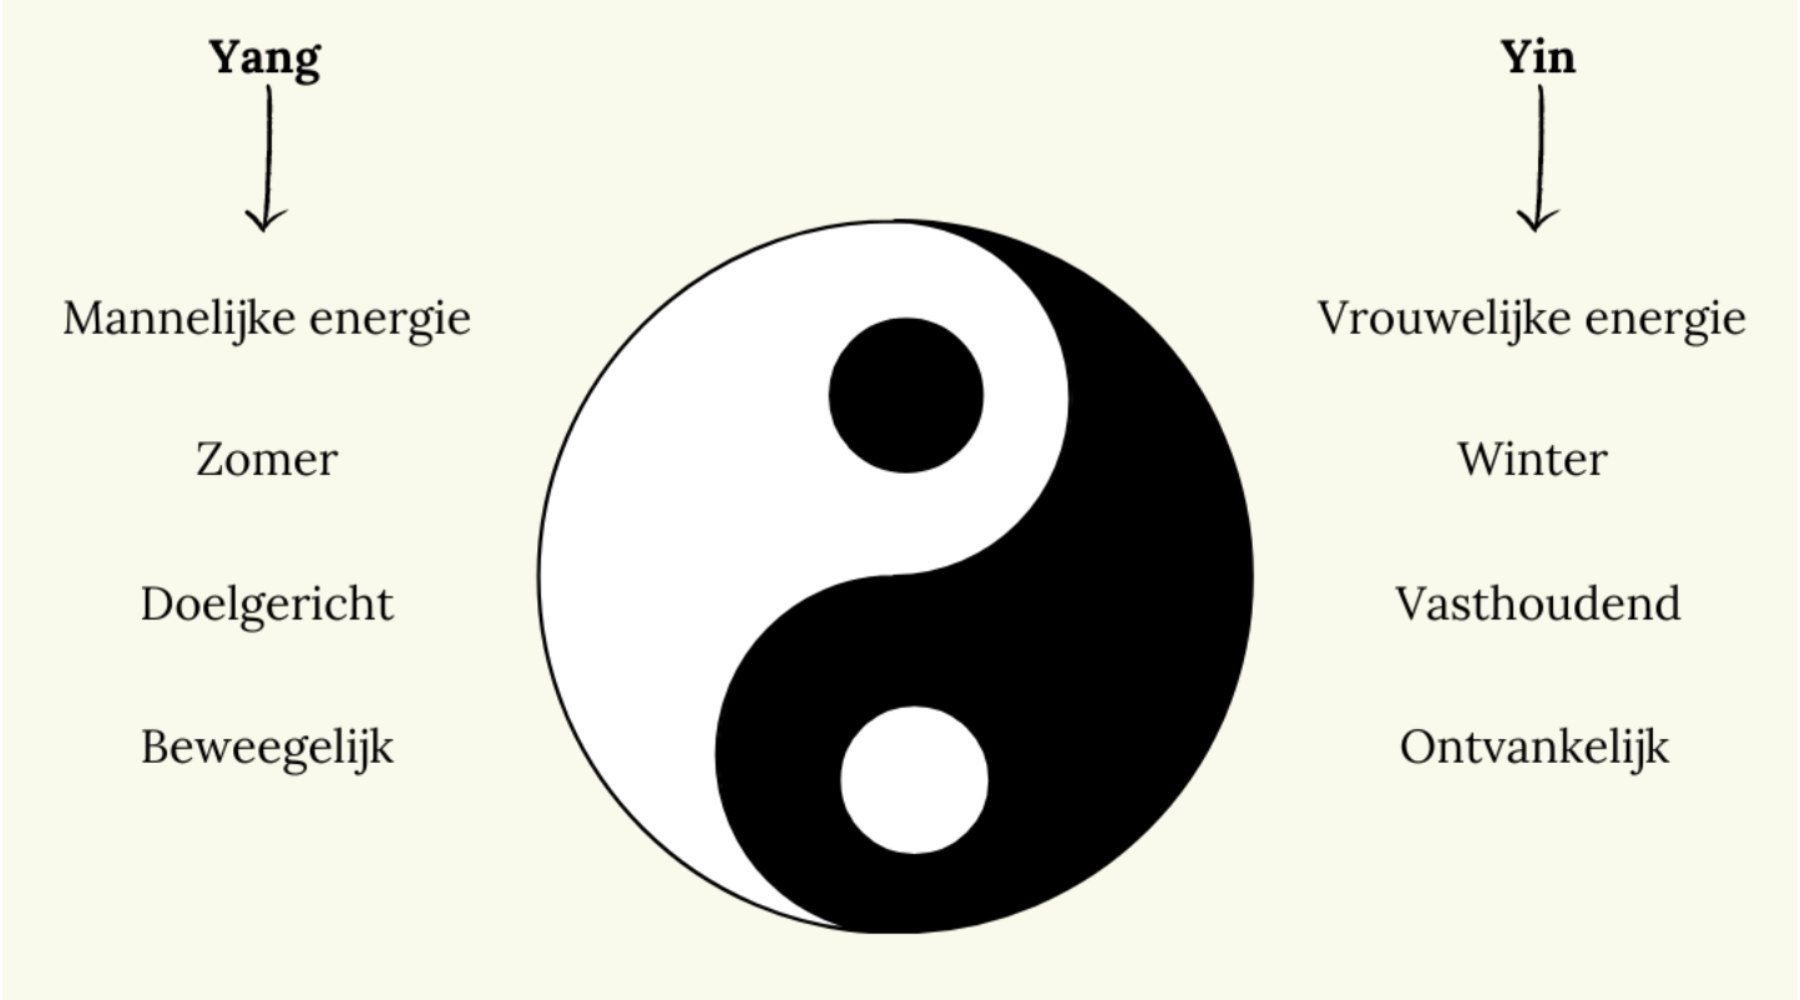 Yin & Yang meaning